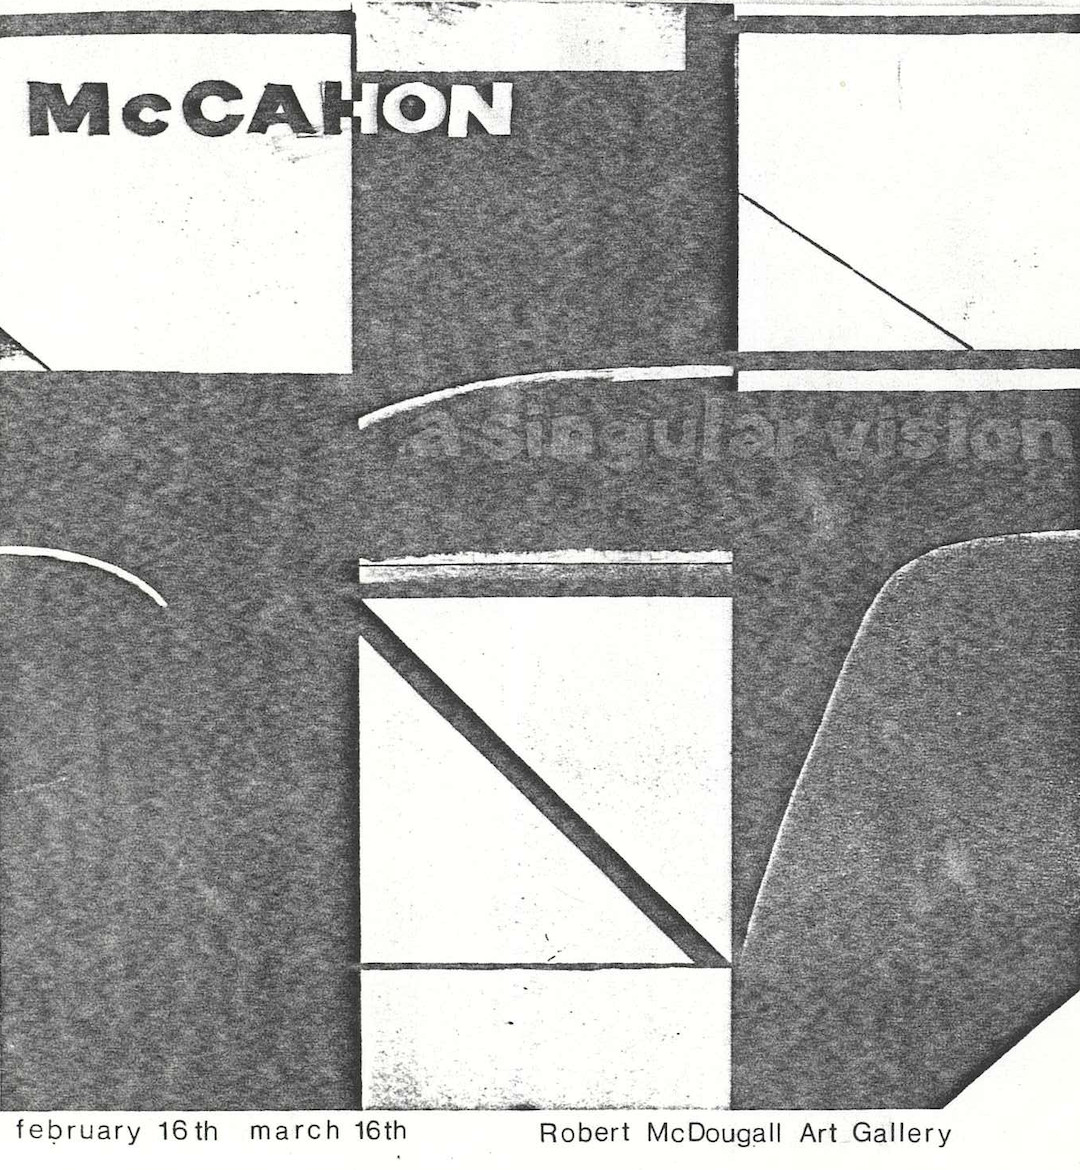 McCahon: A Singular Vision